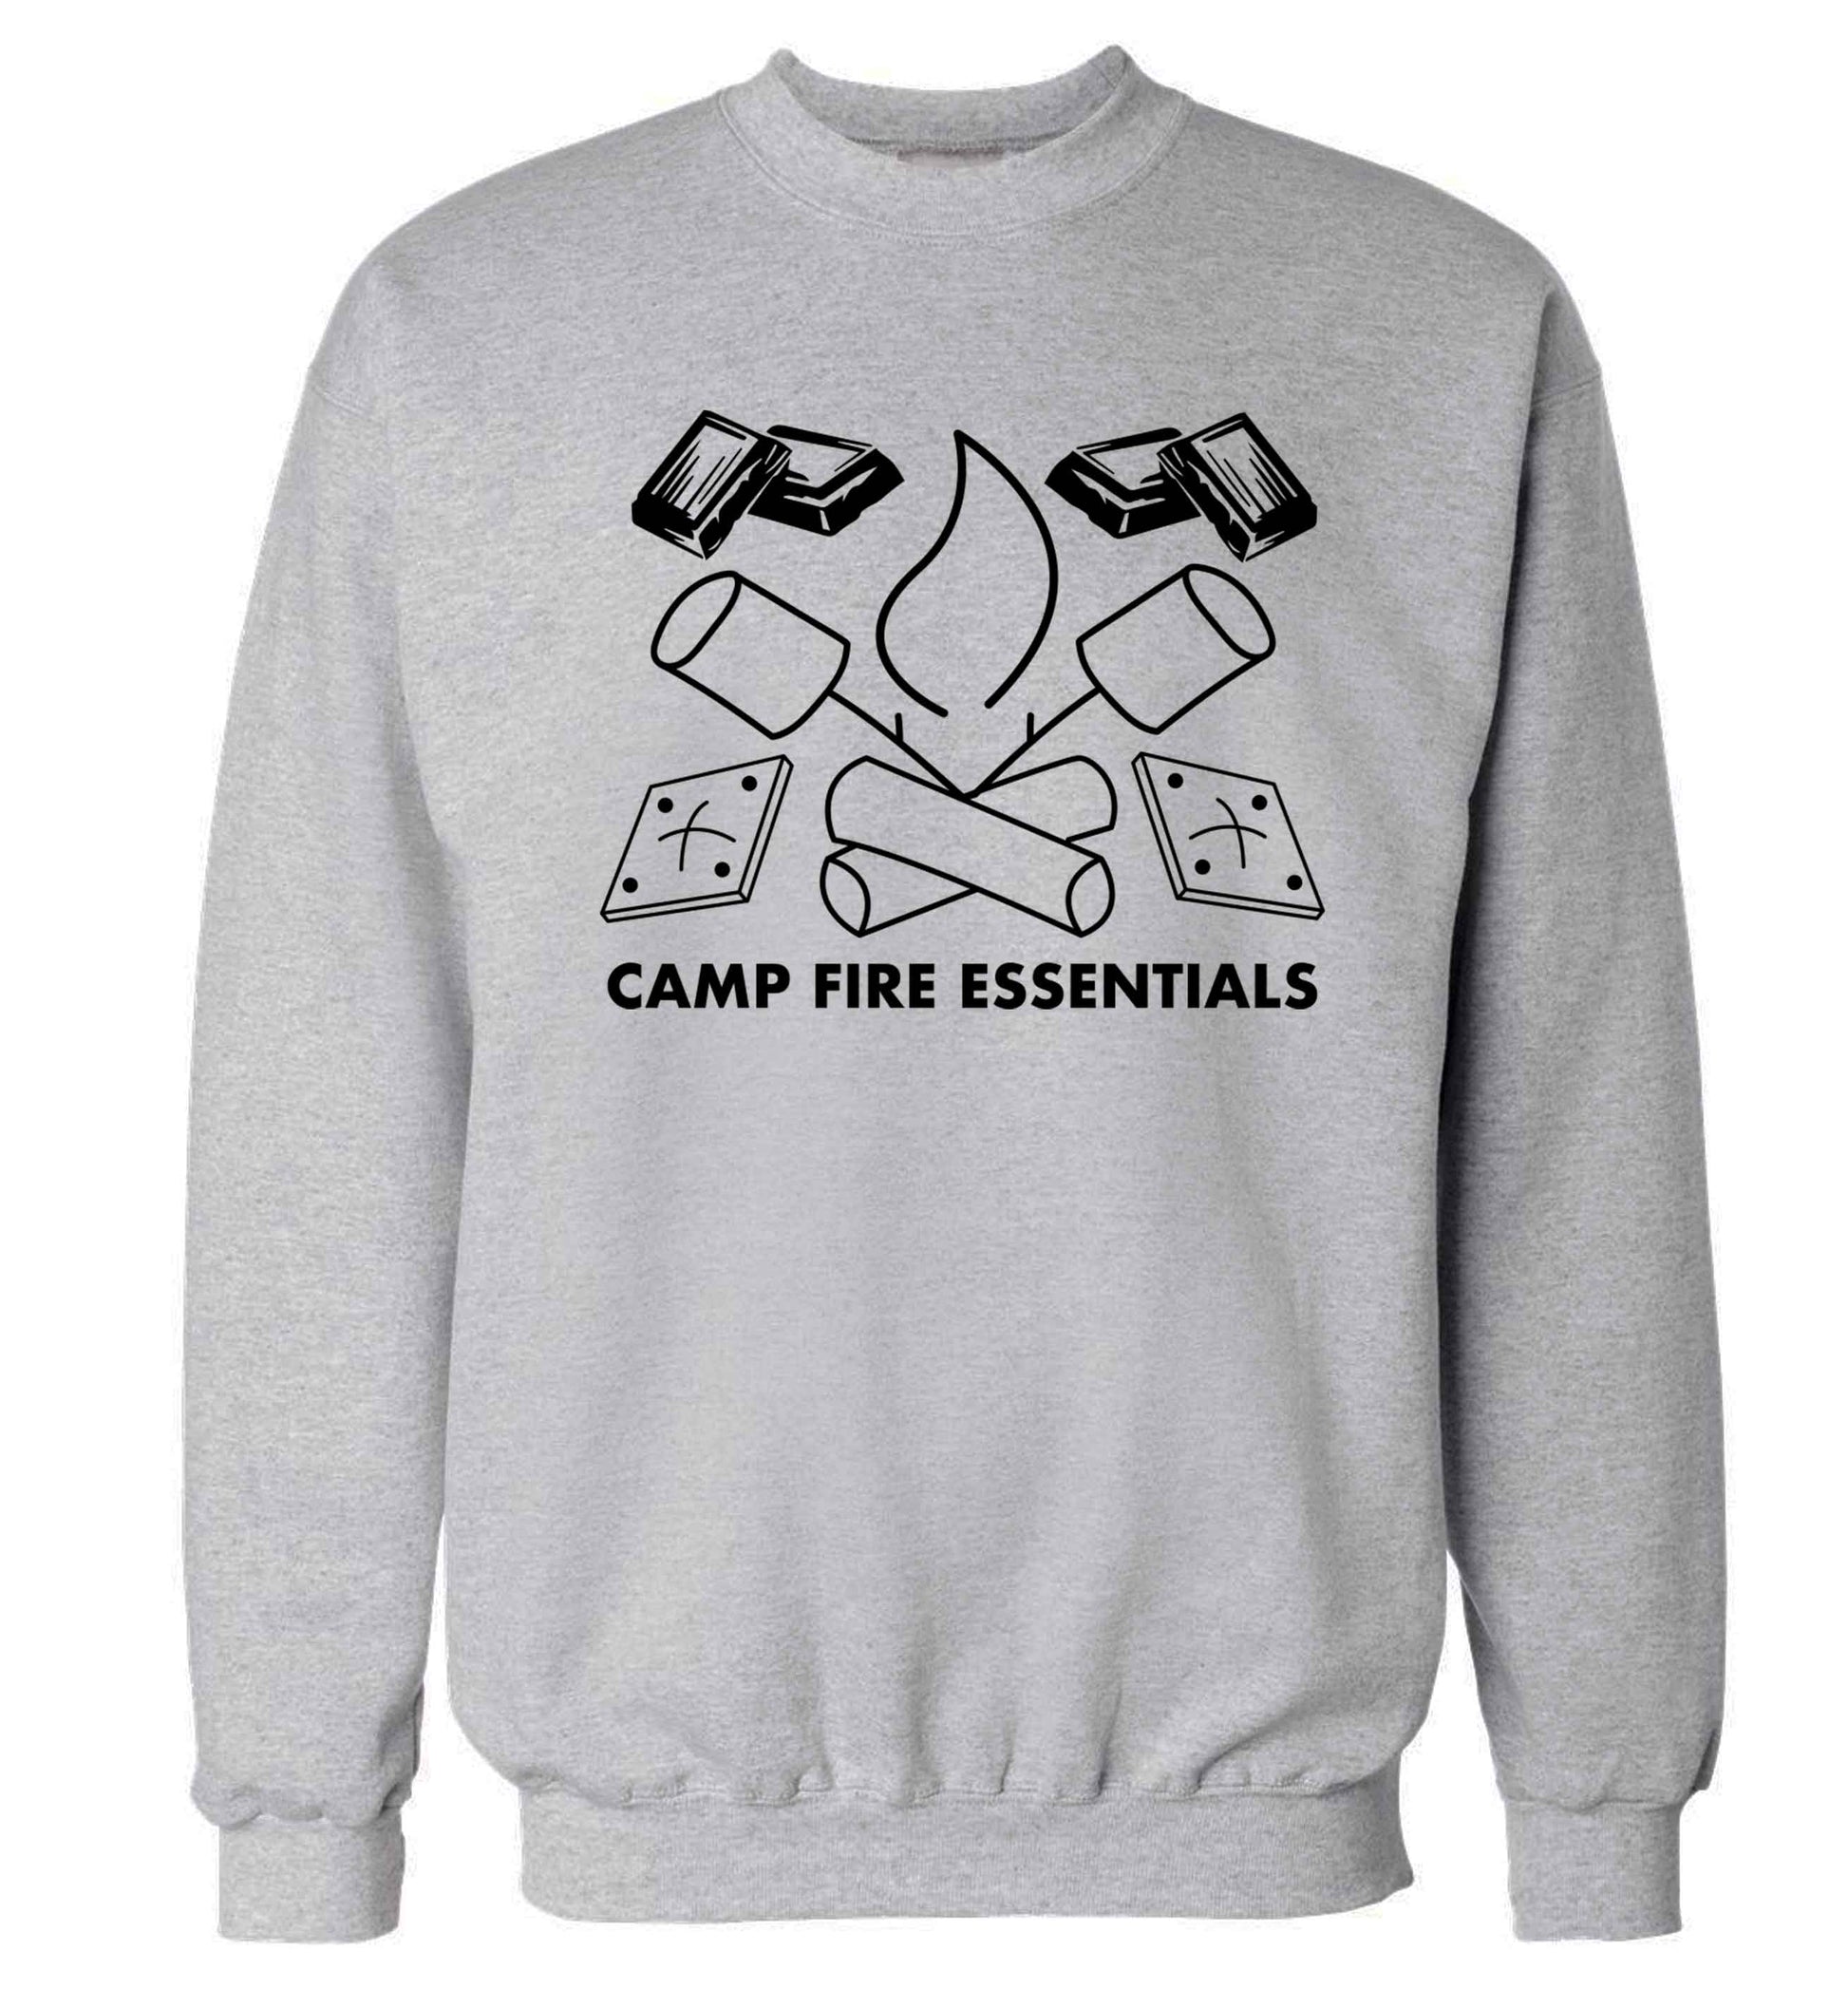 Campfire essentials Adult's unisex grey Sweater 2XL